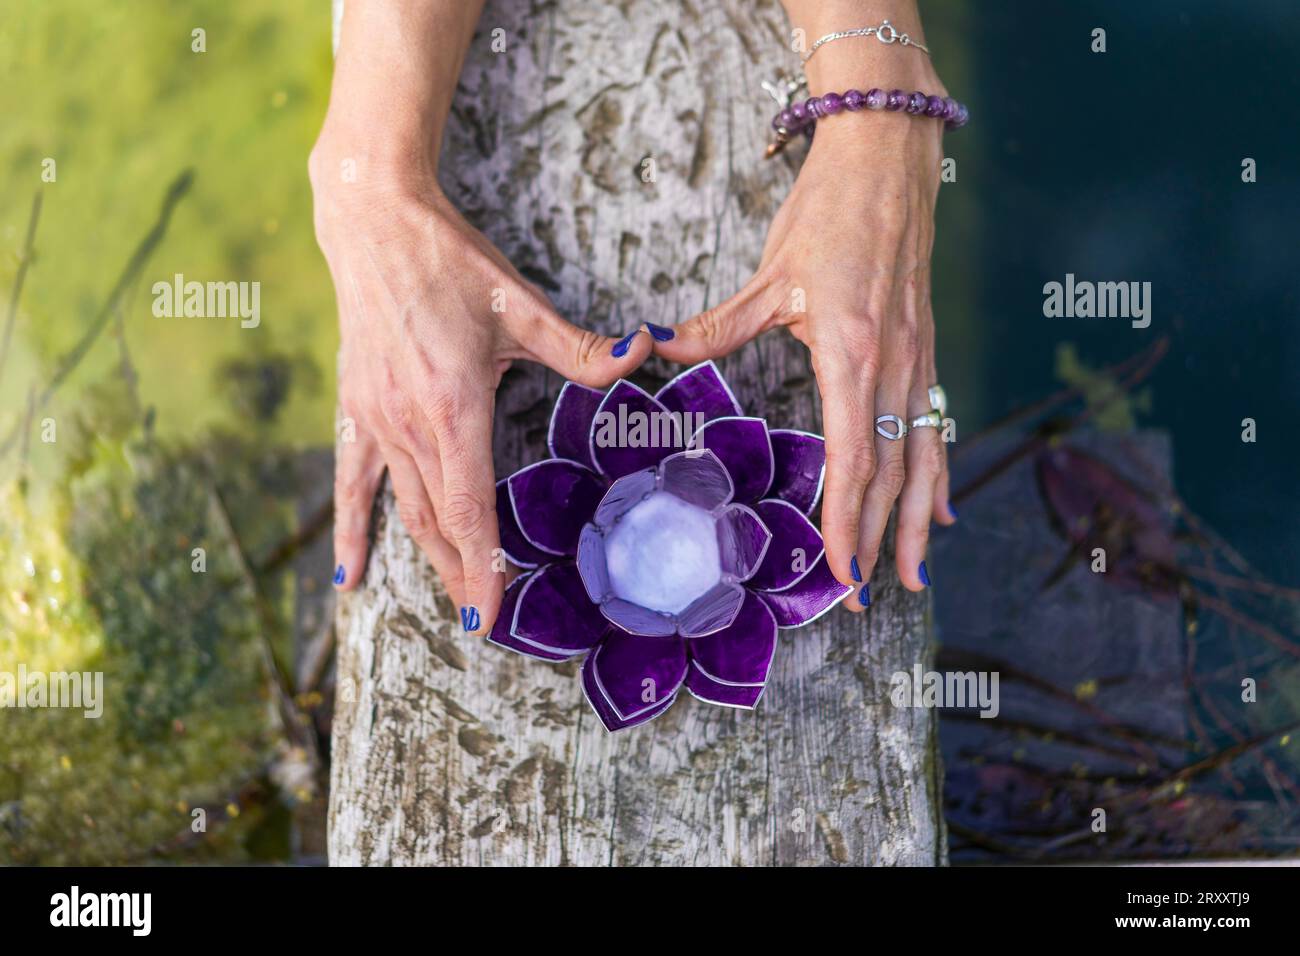 Vue d'angle de dessus des mains tenant un lotus en verre violet sur un tronc d'arbre au-dessus de l'eau. Concept de yoga et de méditation Banque D'Images